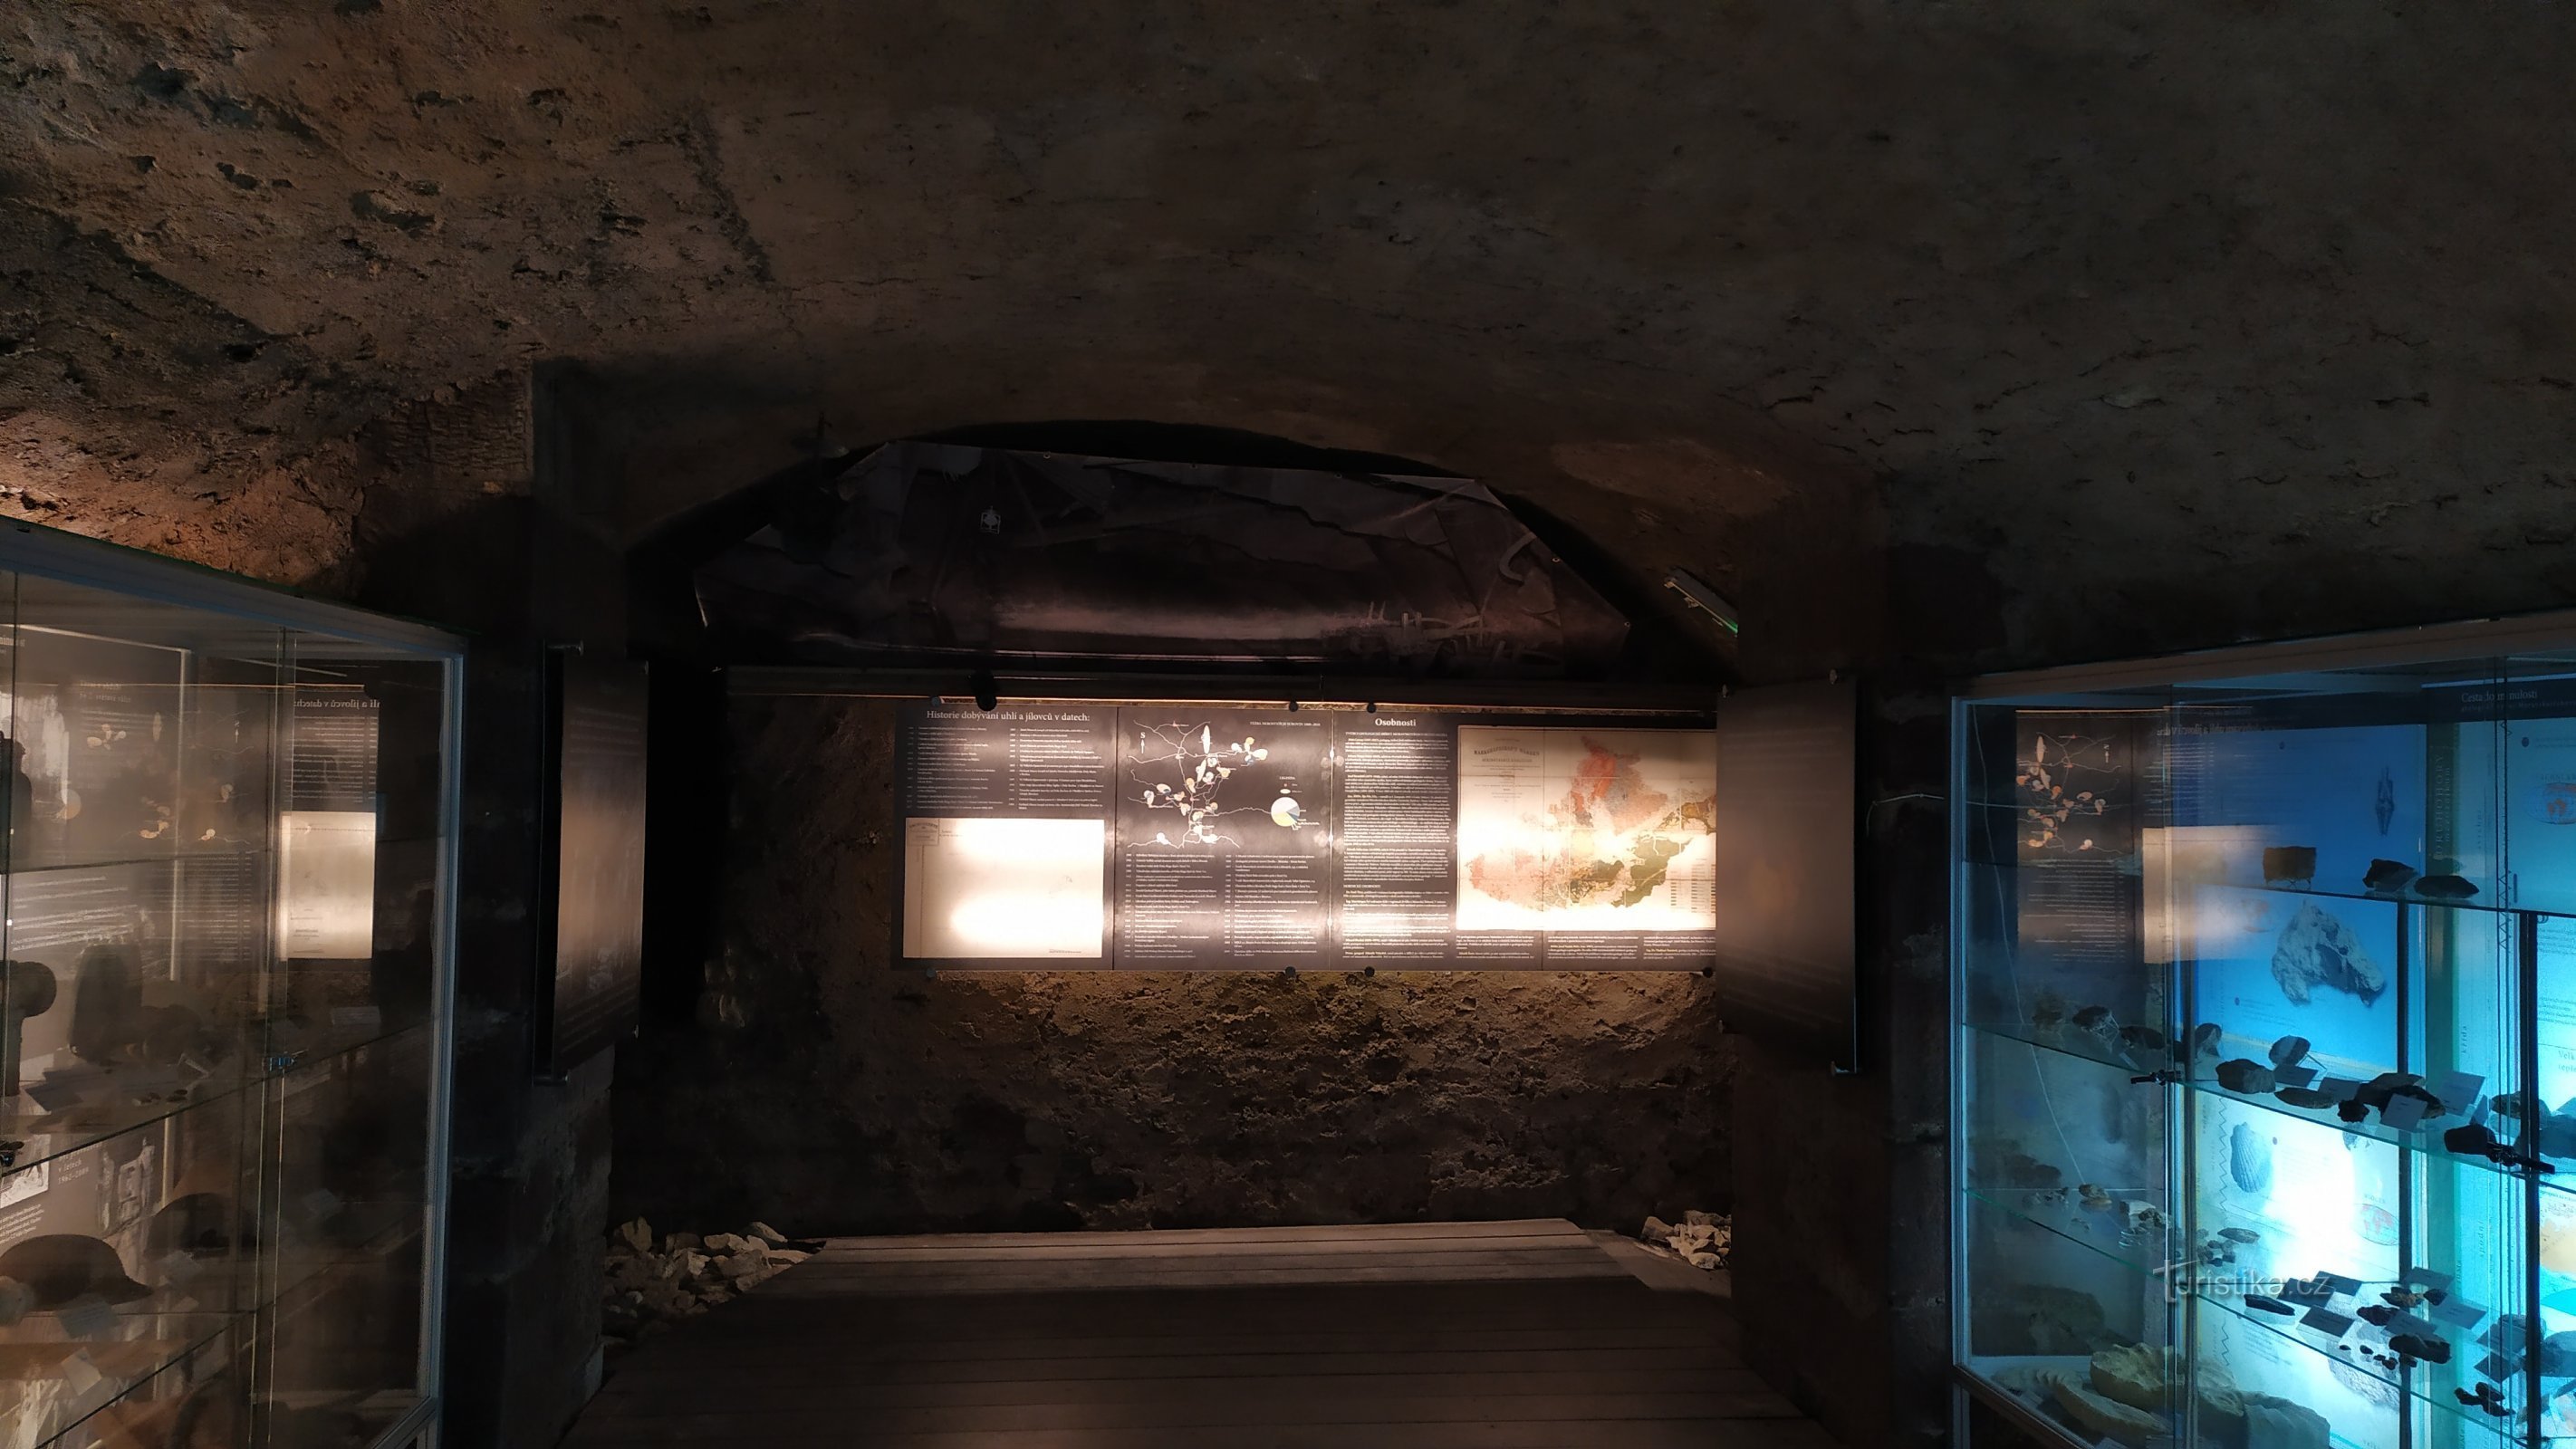 A exposição está localizada nas ruínas da adega do antigo castelo